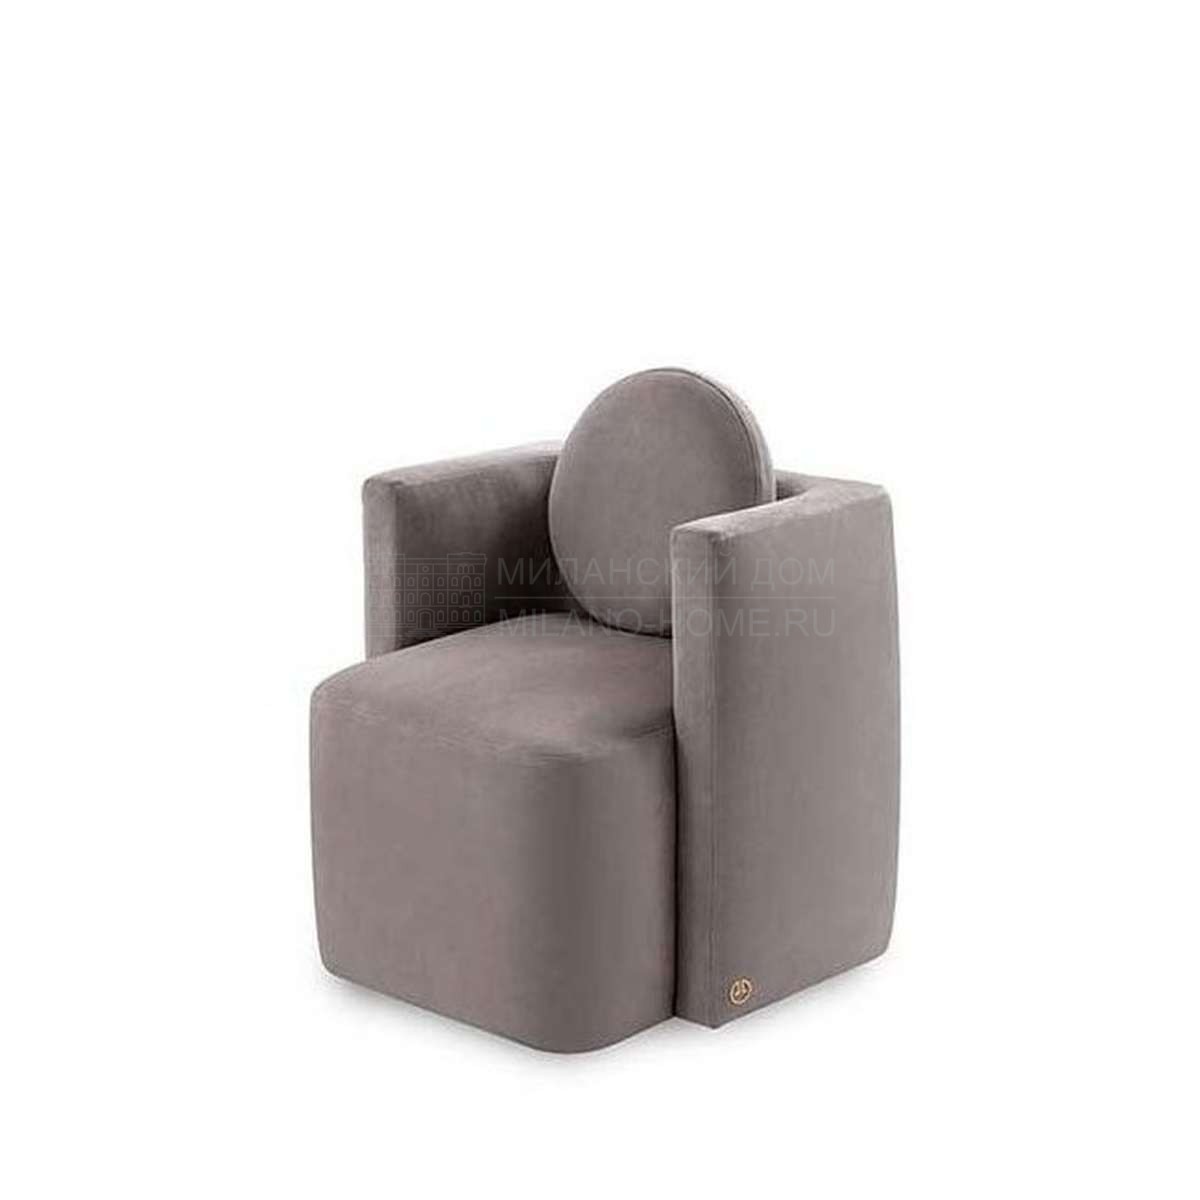 Кожаное кресло Ginger armchair leather из Италии фабрики FENDI Casa